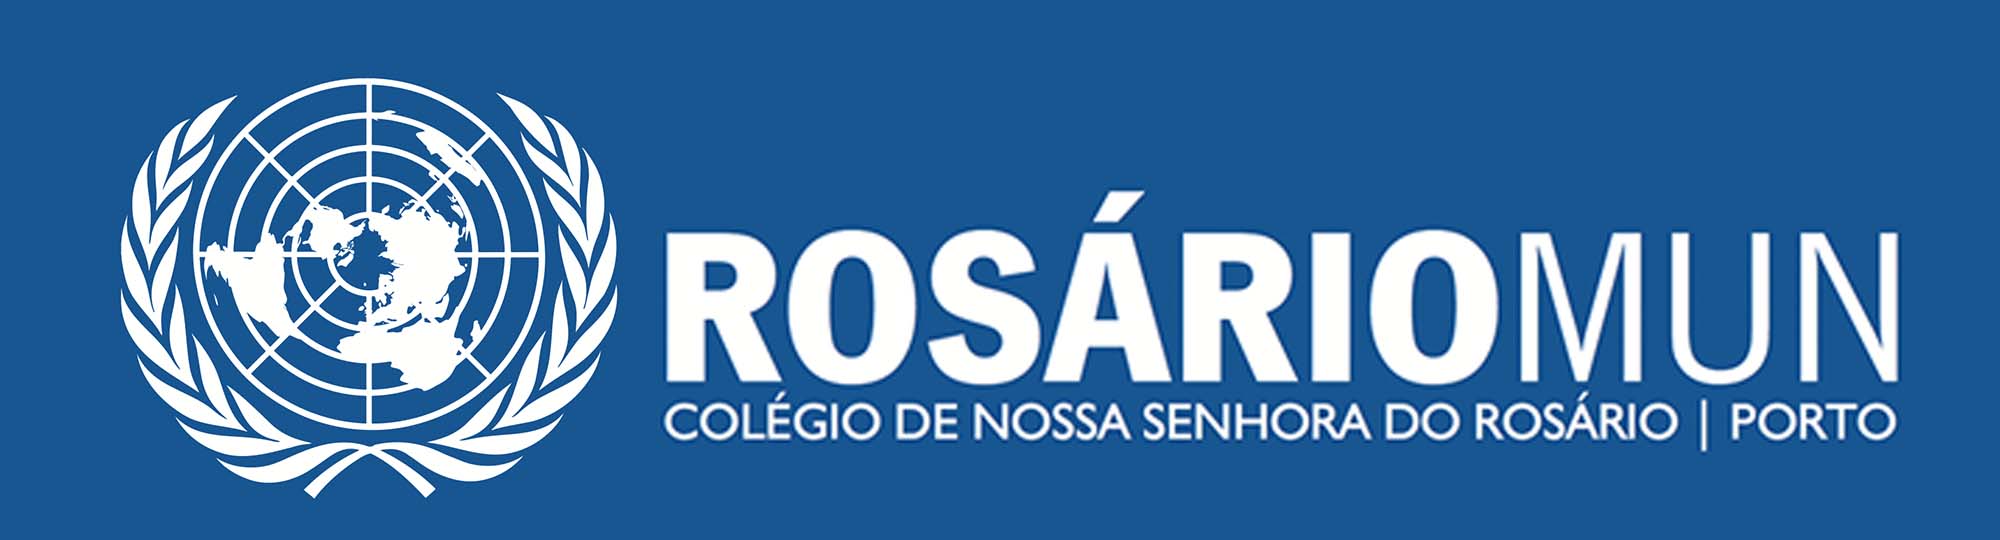 RosárioMUN 2017
